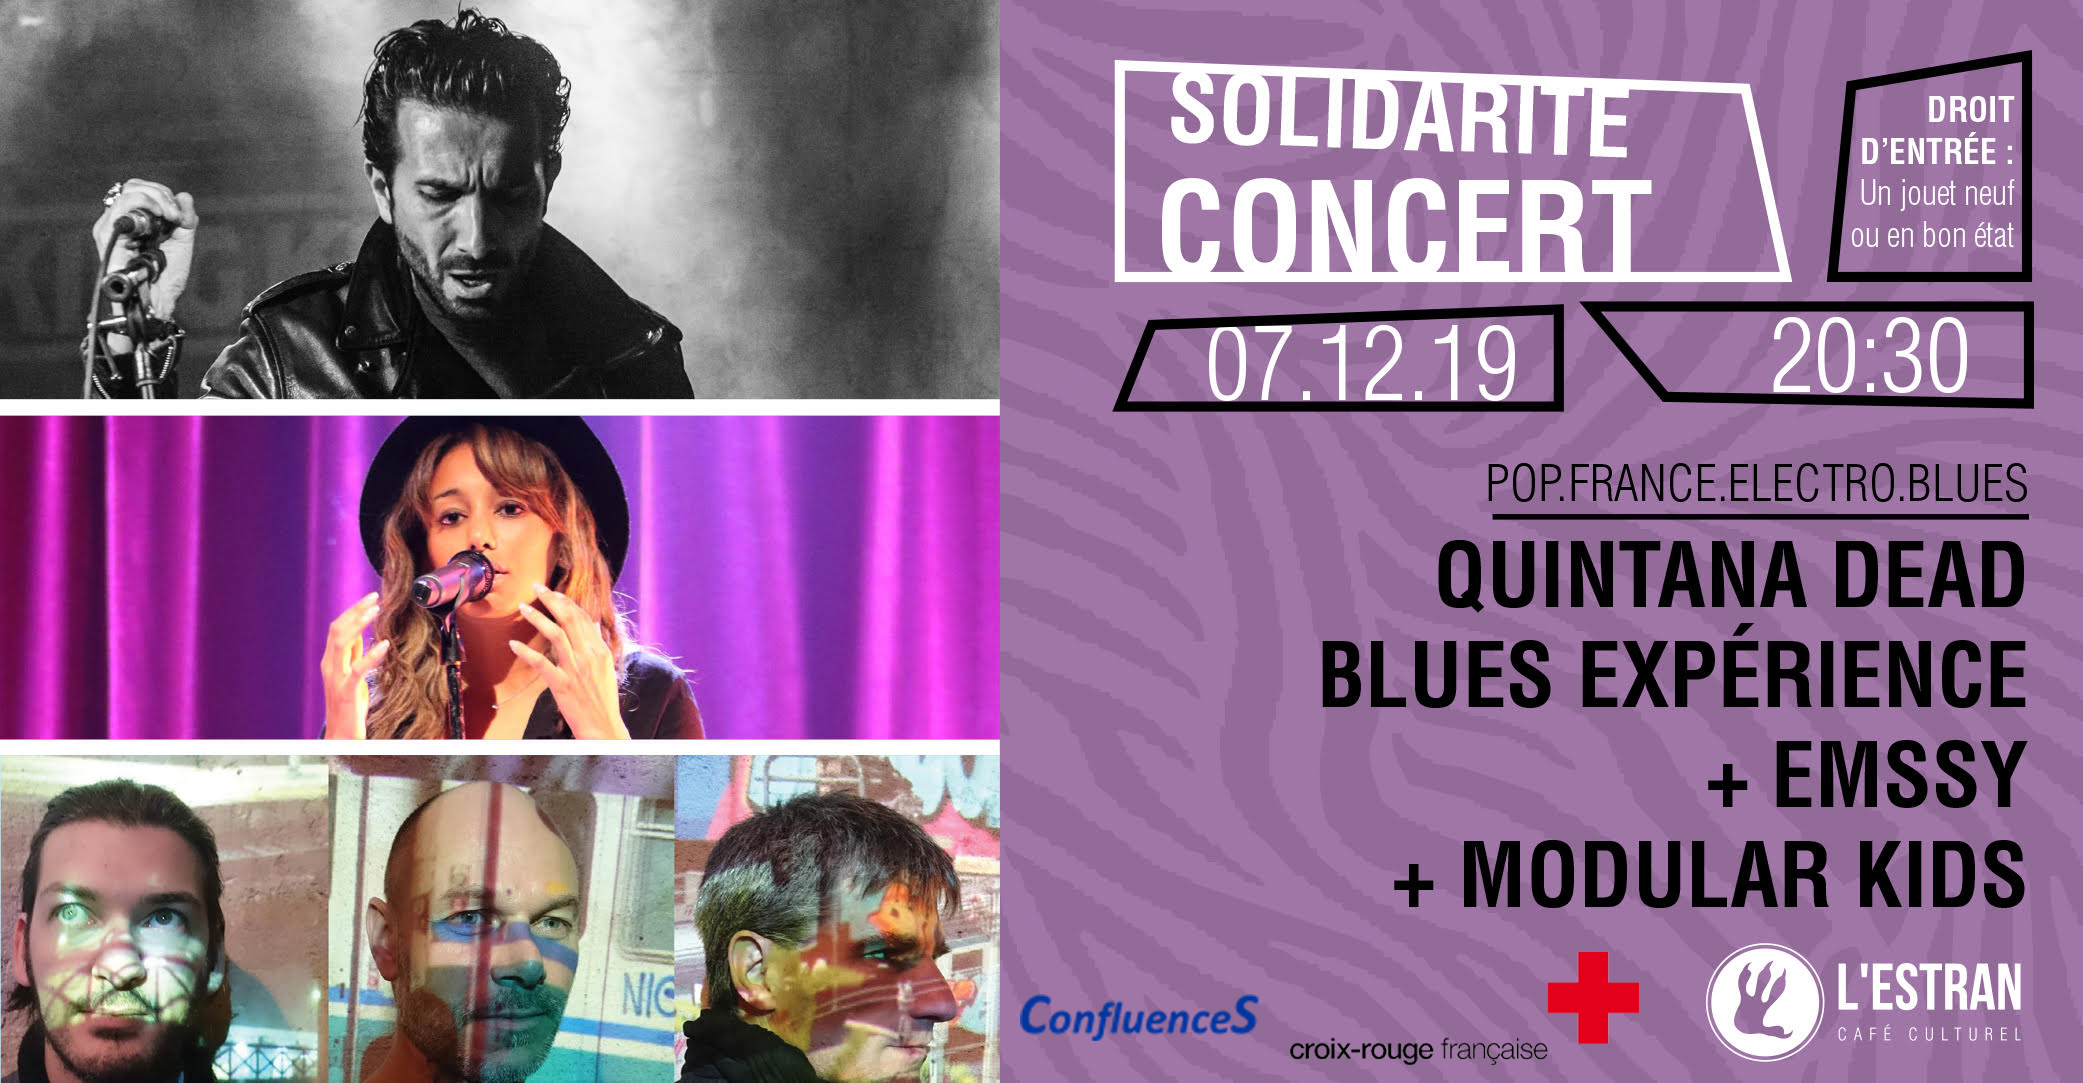 2019 12 - 07 Event concert solidarité.jpg (592 KB)